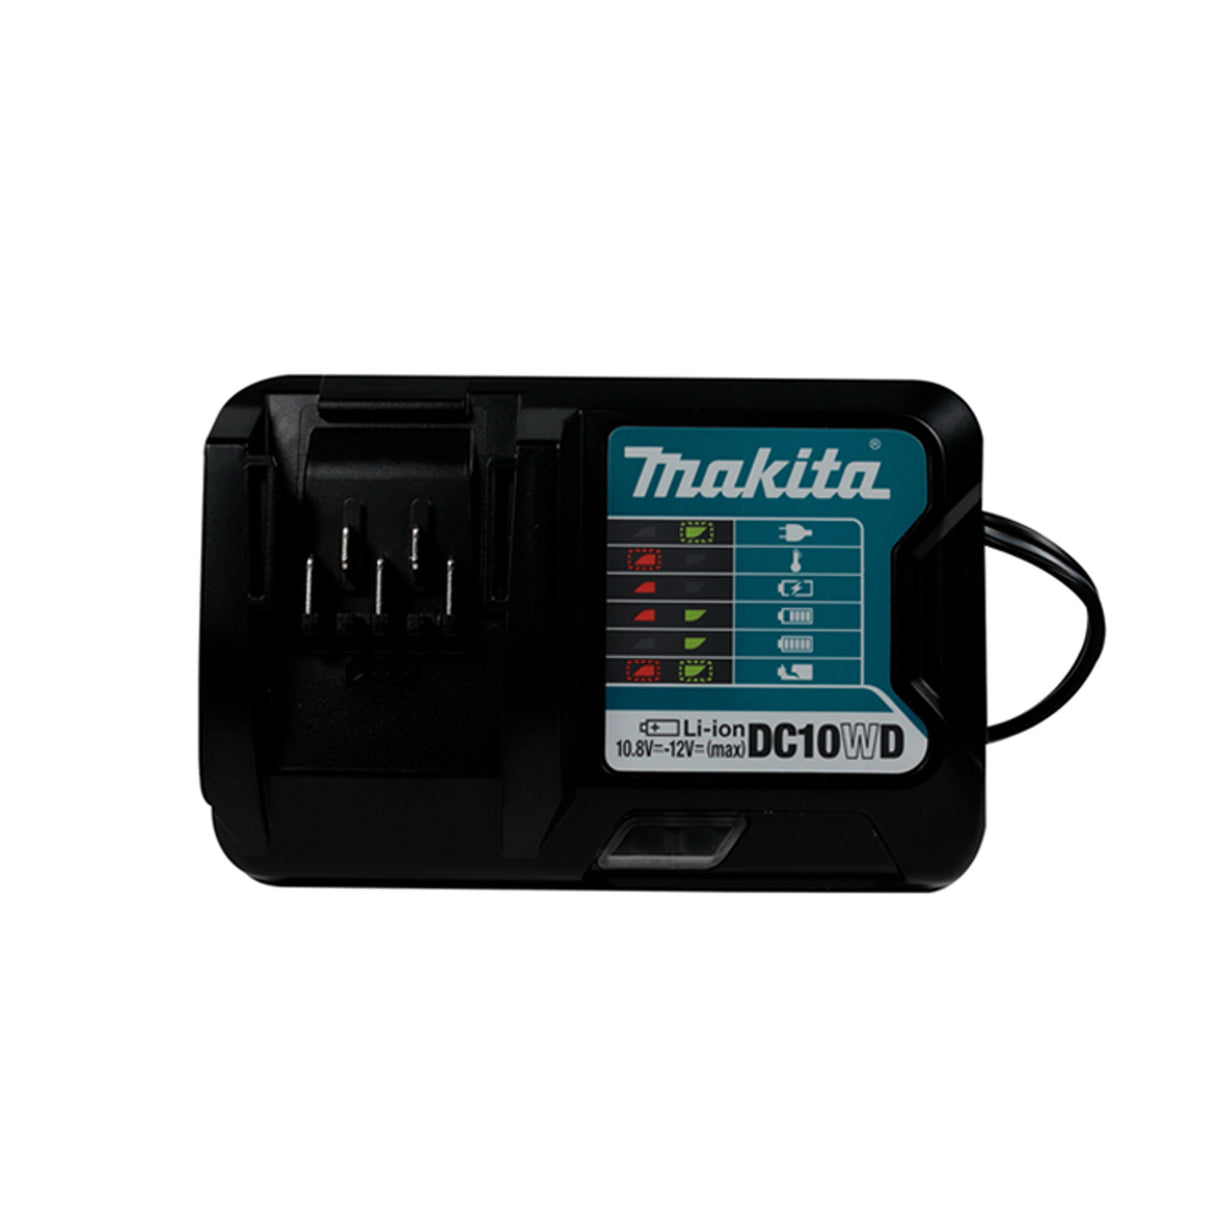 Combo Makita CLX228 Atornillador TD110D + Rotomartillo HP333D + Accesorios